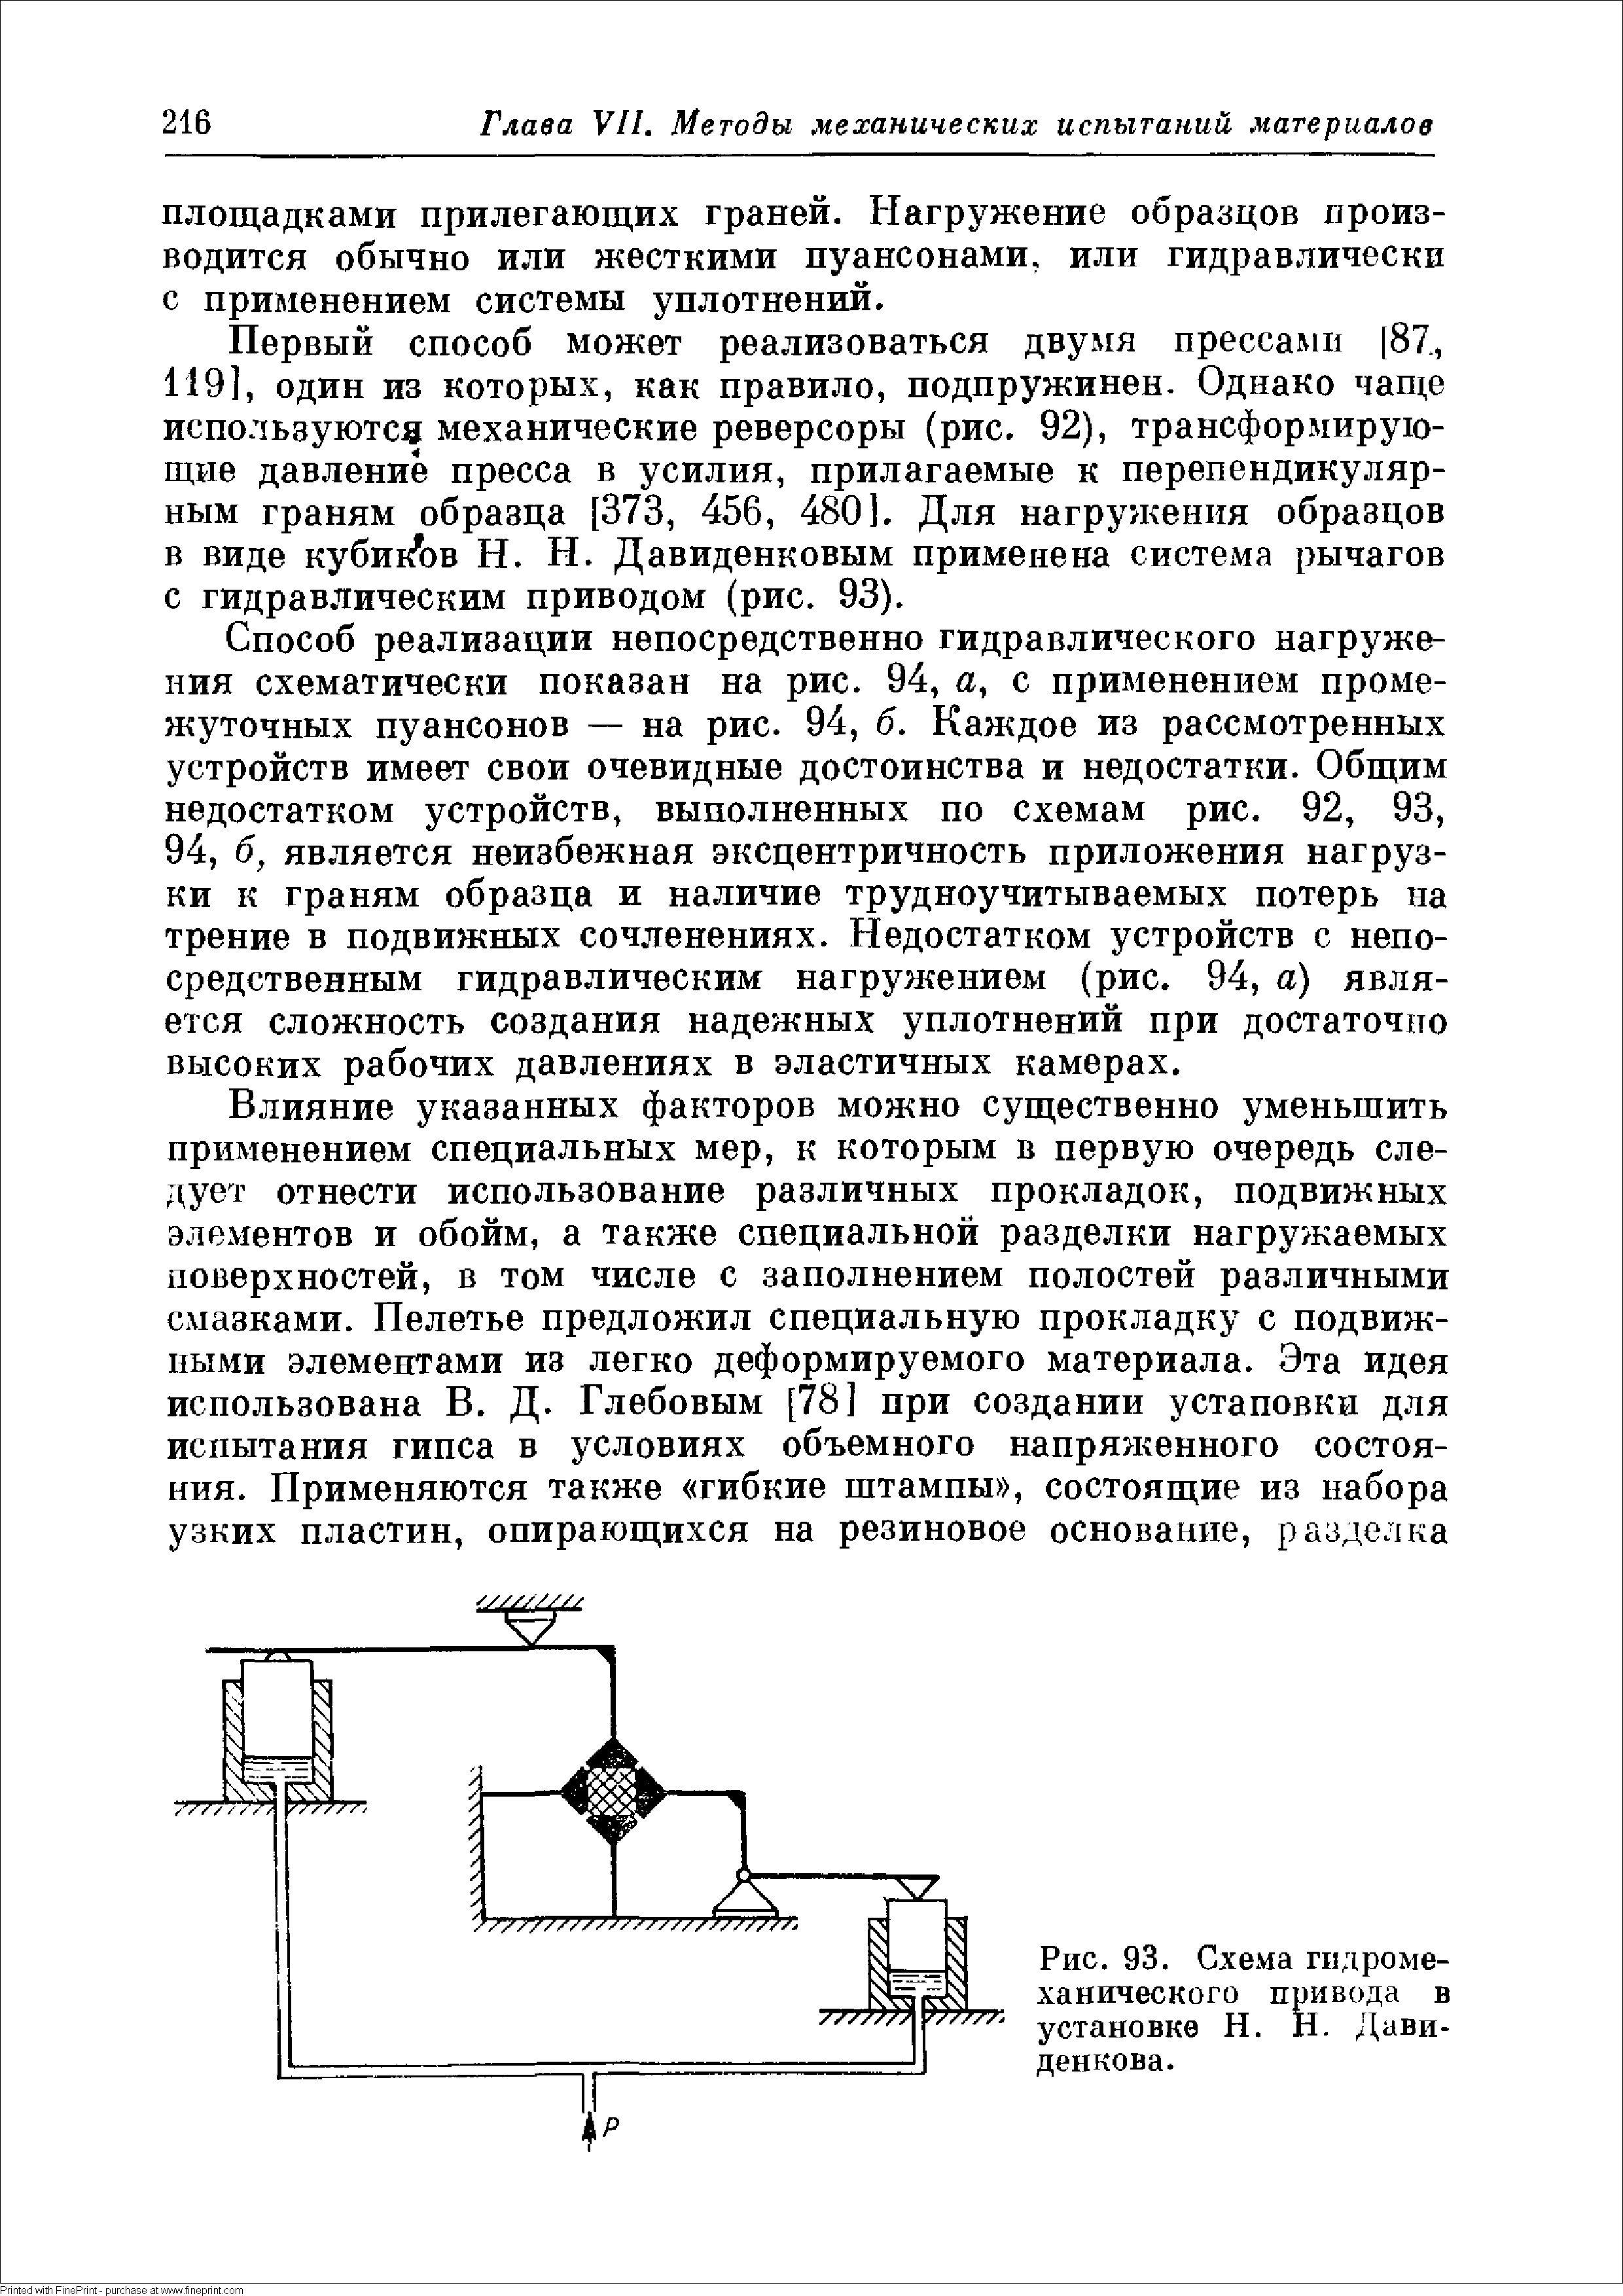 Рис. 93. Схема гидромеханического привода в установке Н. Н. Дави-денкова.
